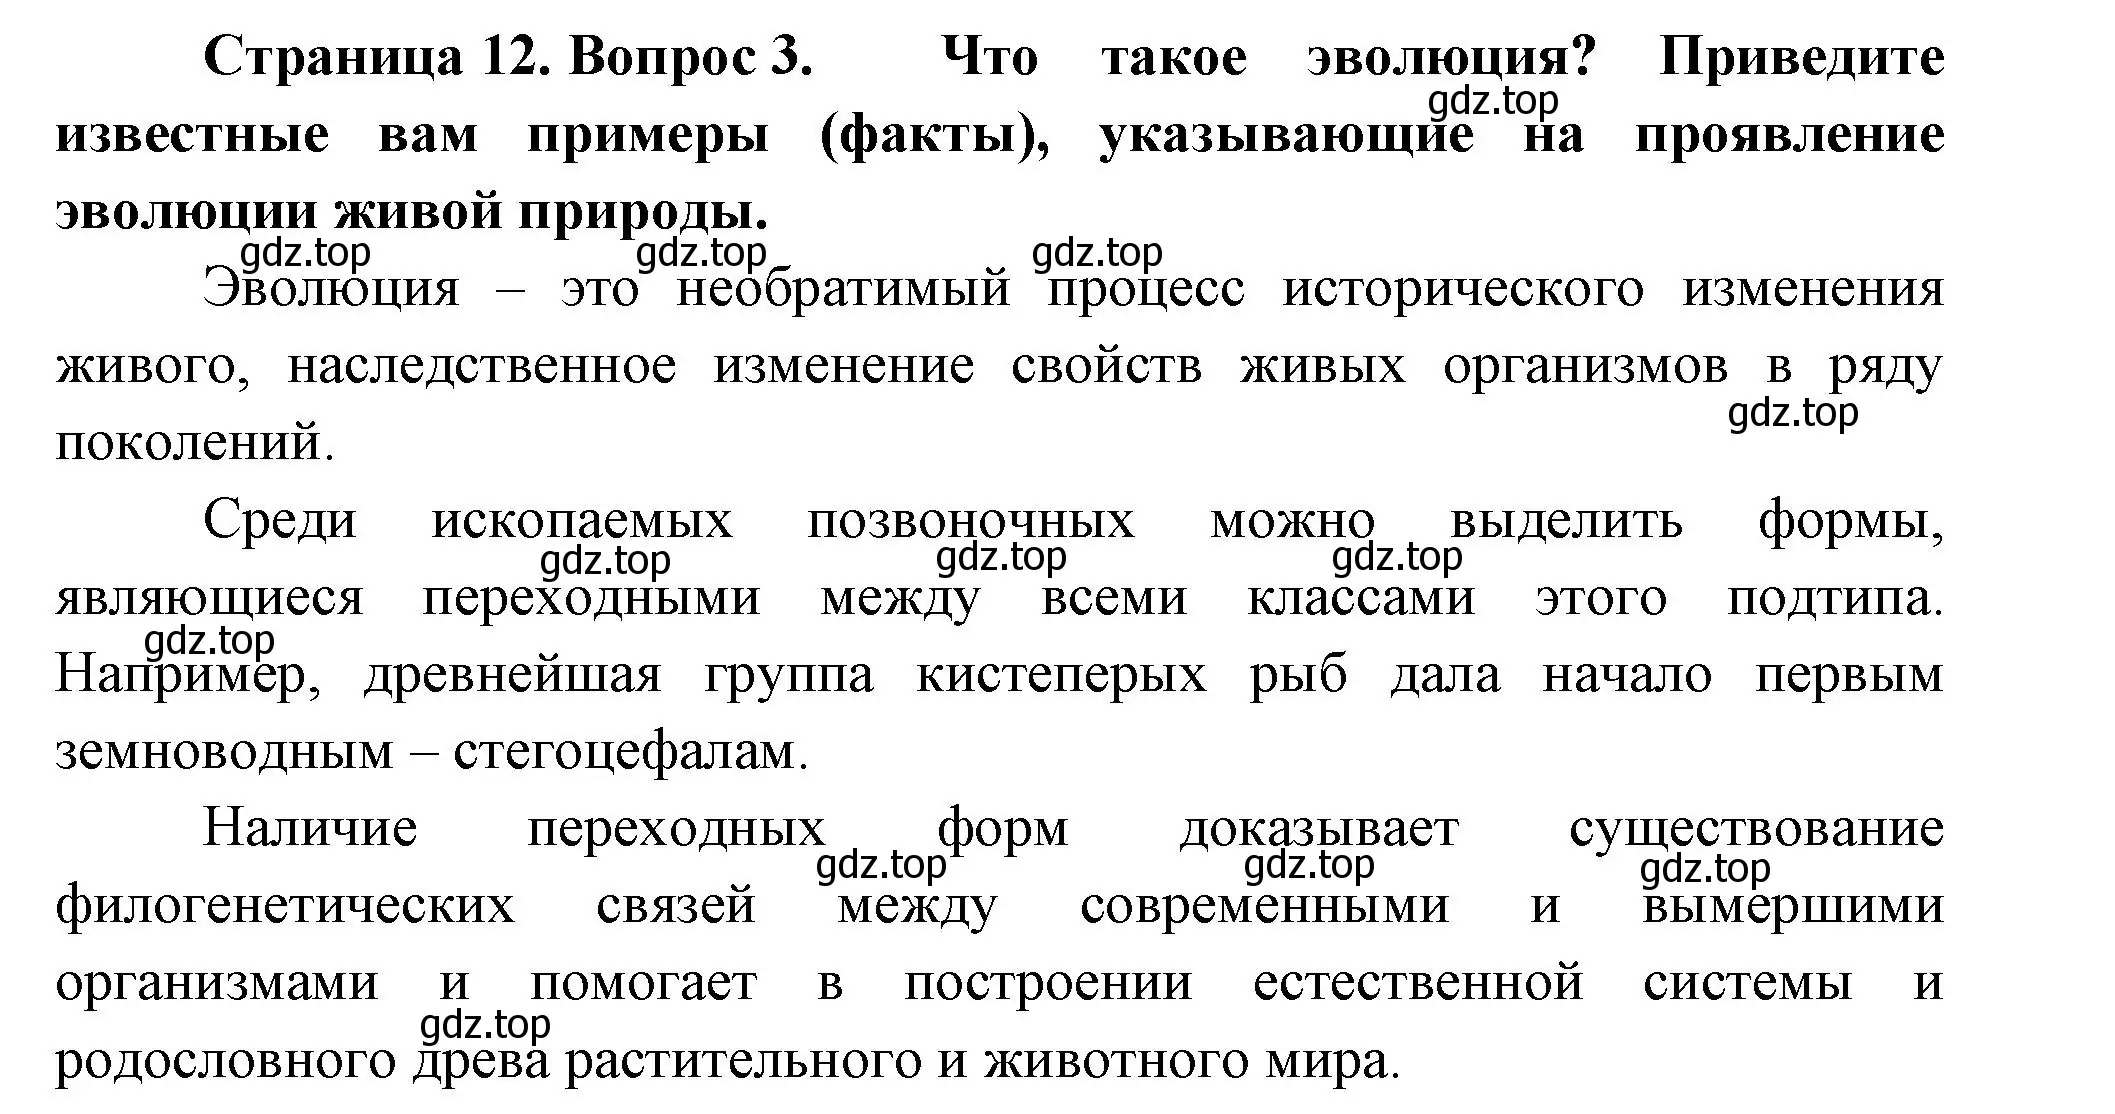 Решение номер 3 (страница 12) гдз по биологии 9 класс Пасечник, Каменский, учебник